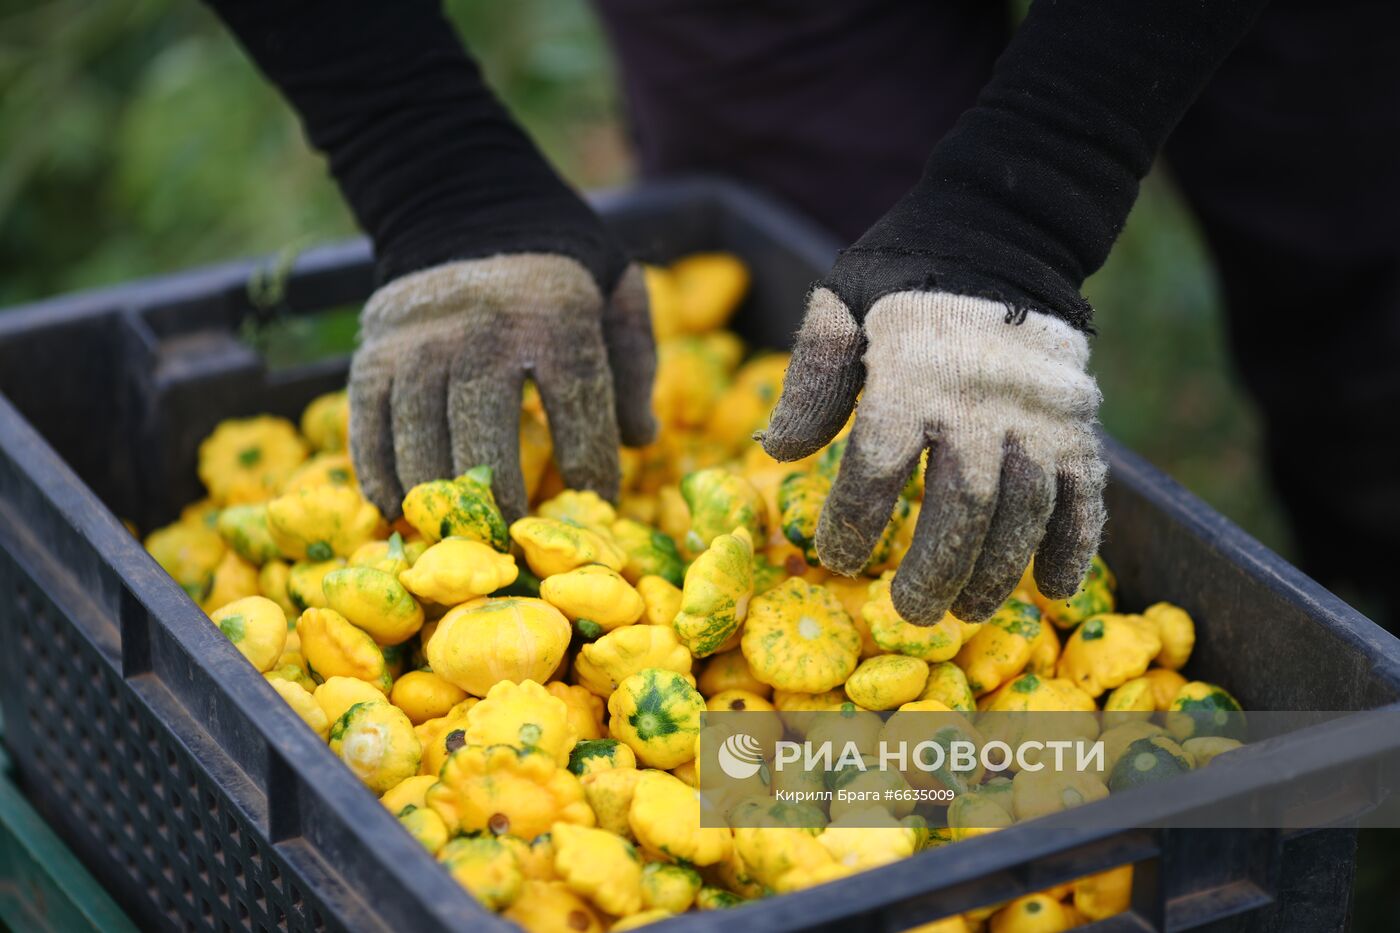 Сбор урожая овощей в Волгоградской области